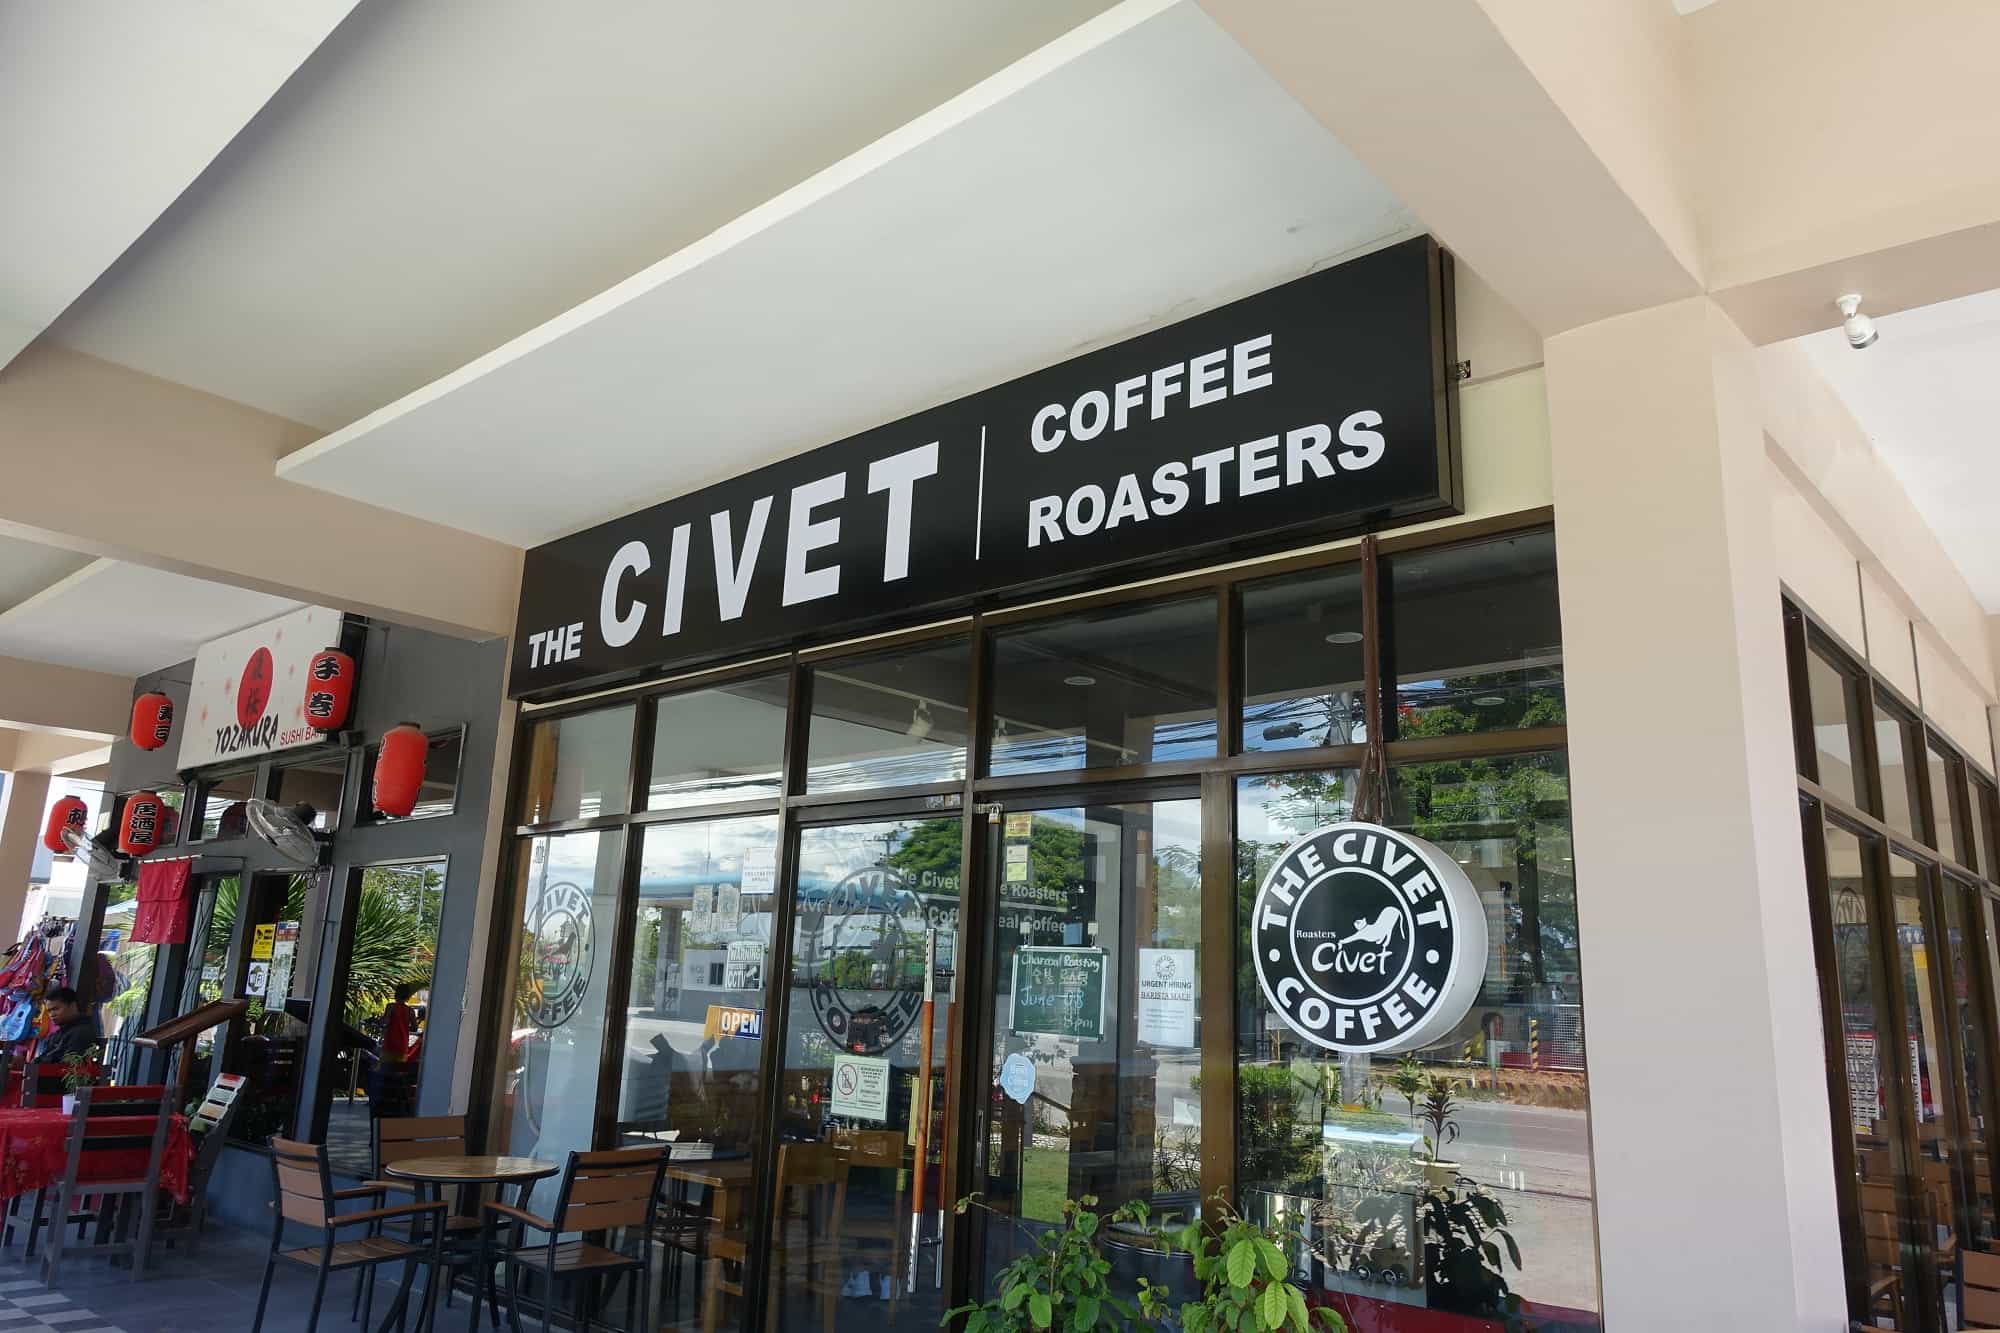 フィリピン産シベットコーヒーThe CIVET